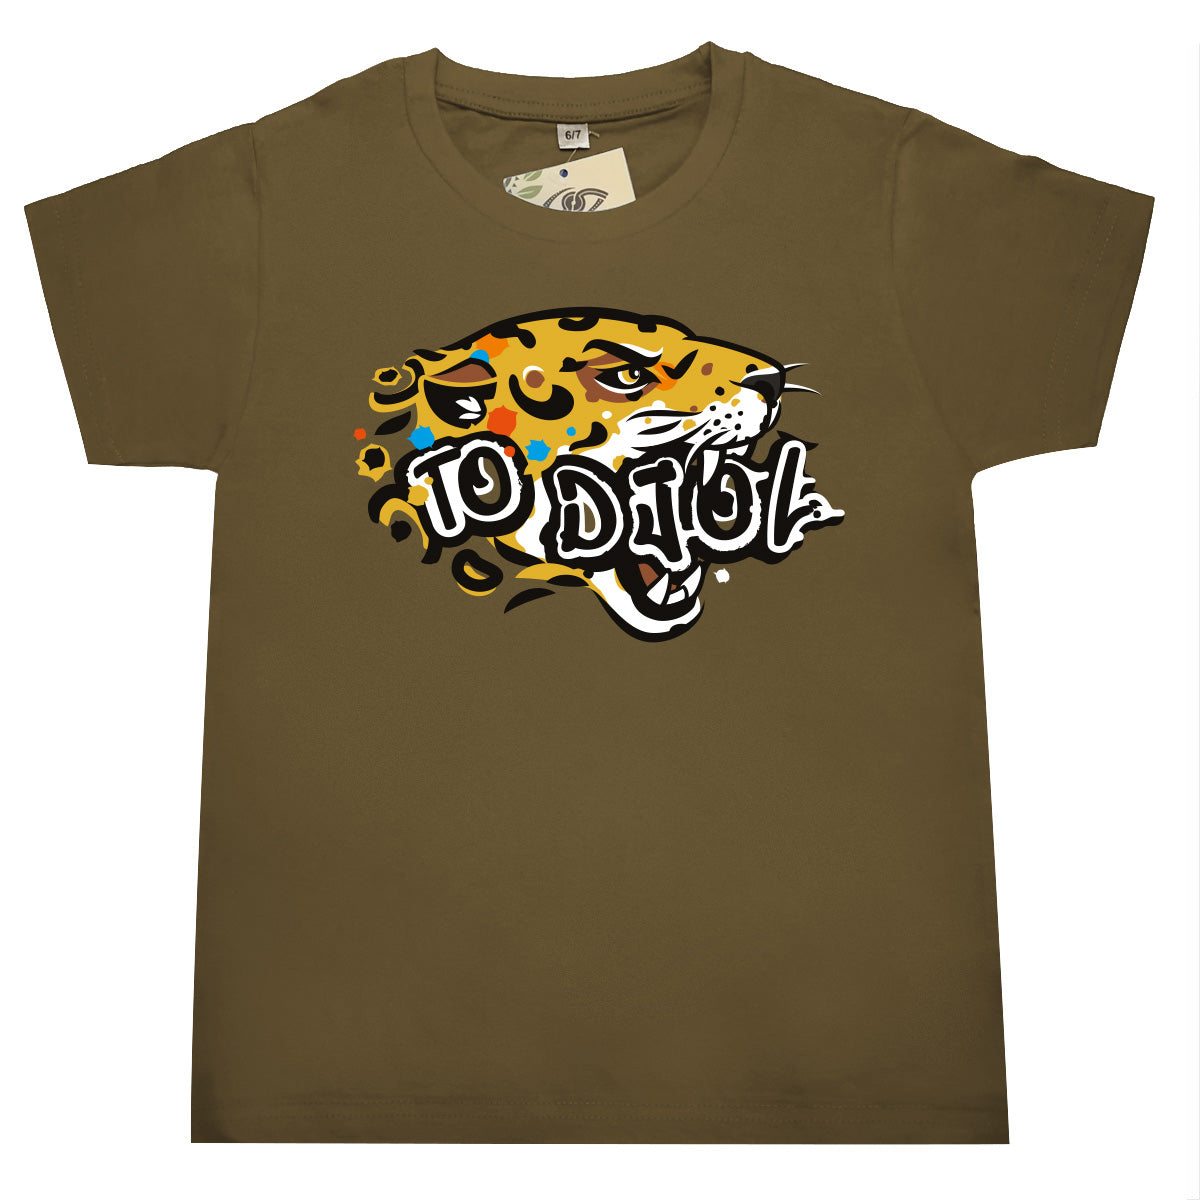 bat wey - T-shirt Enfant To djol Jaguar - Guyane - Kaki